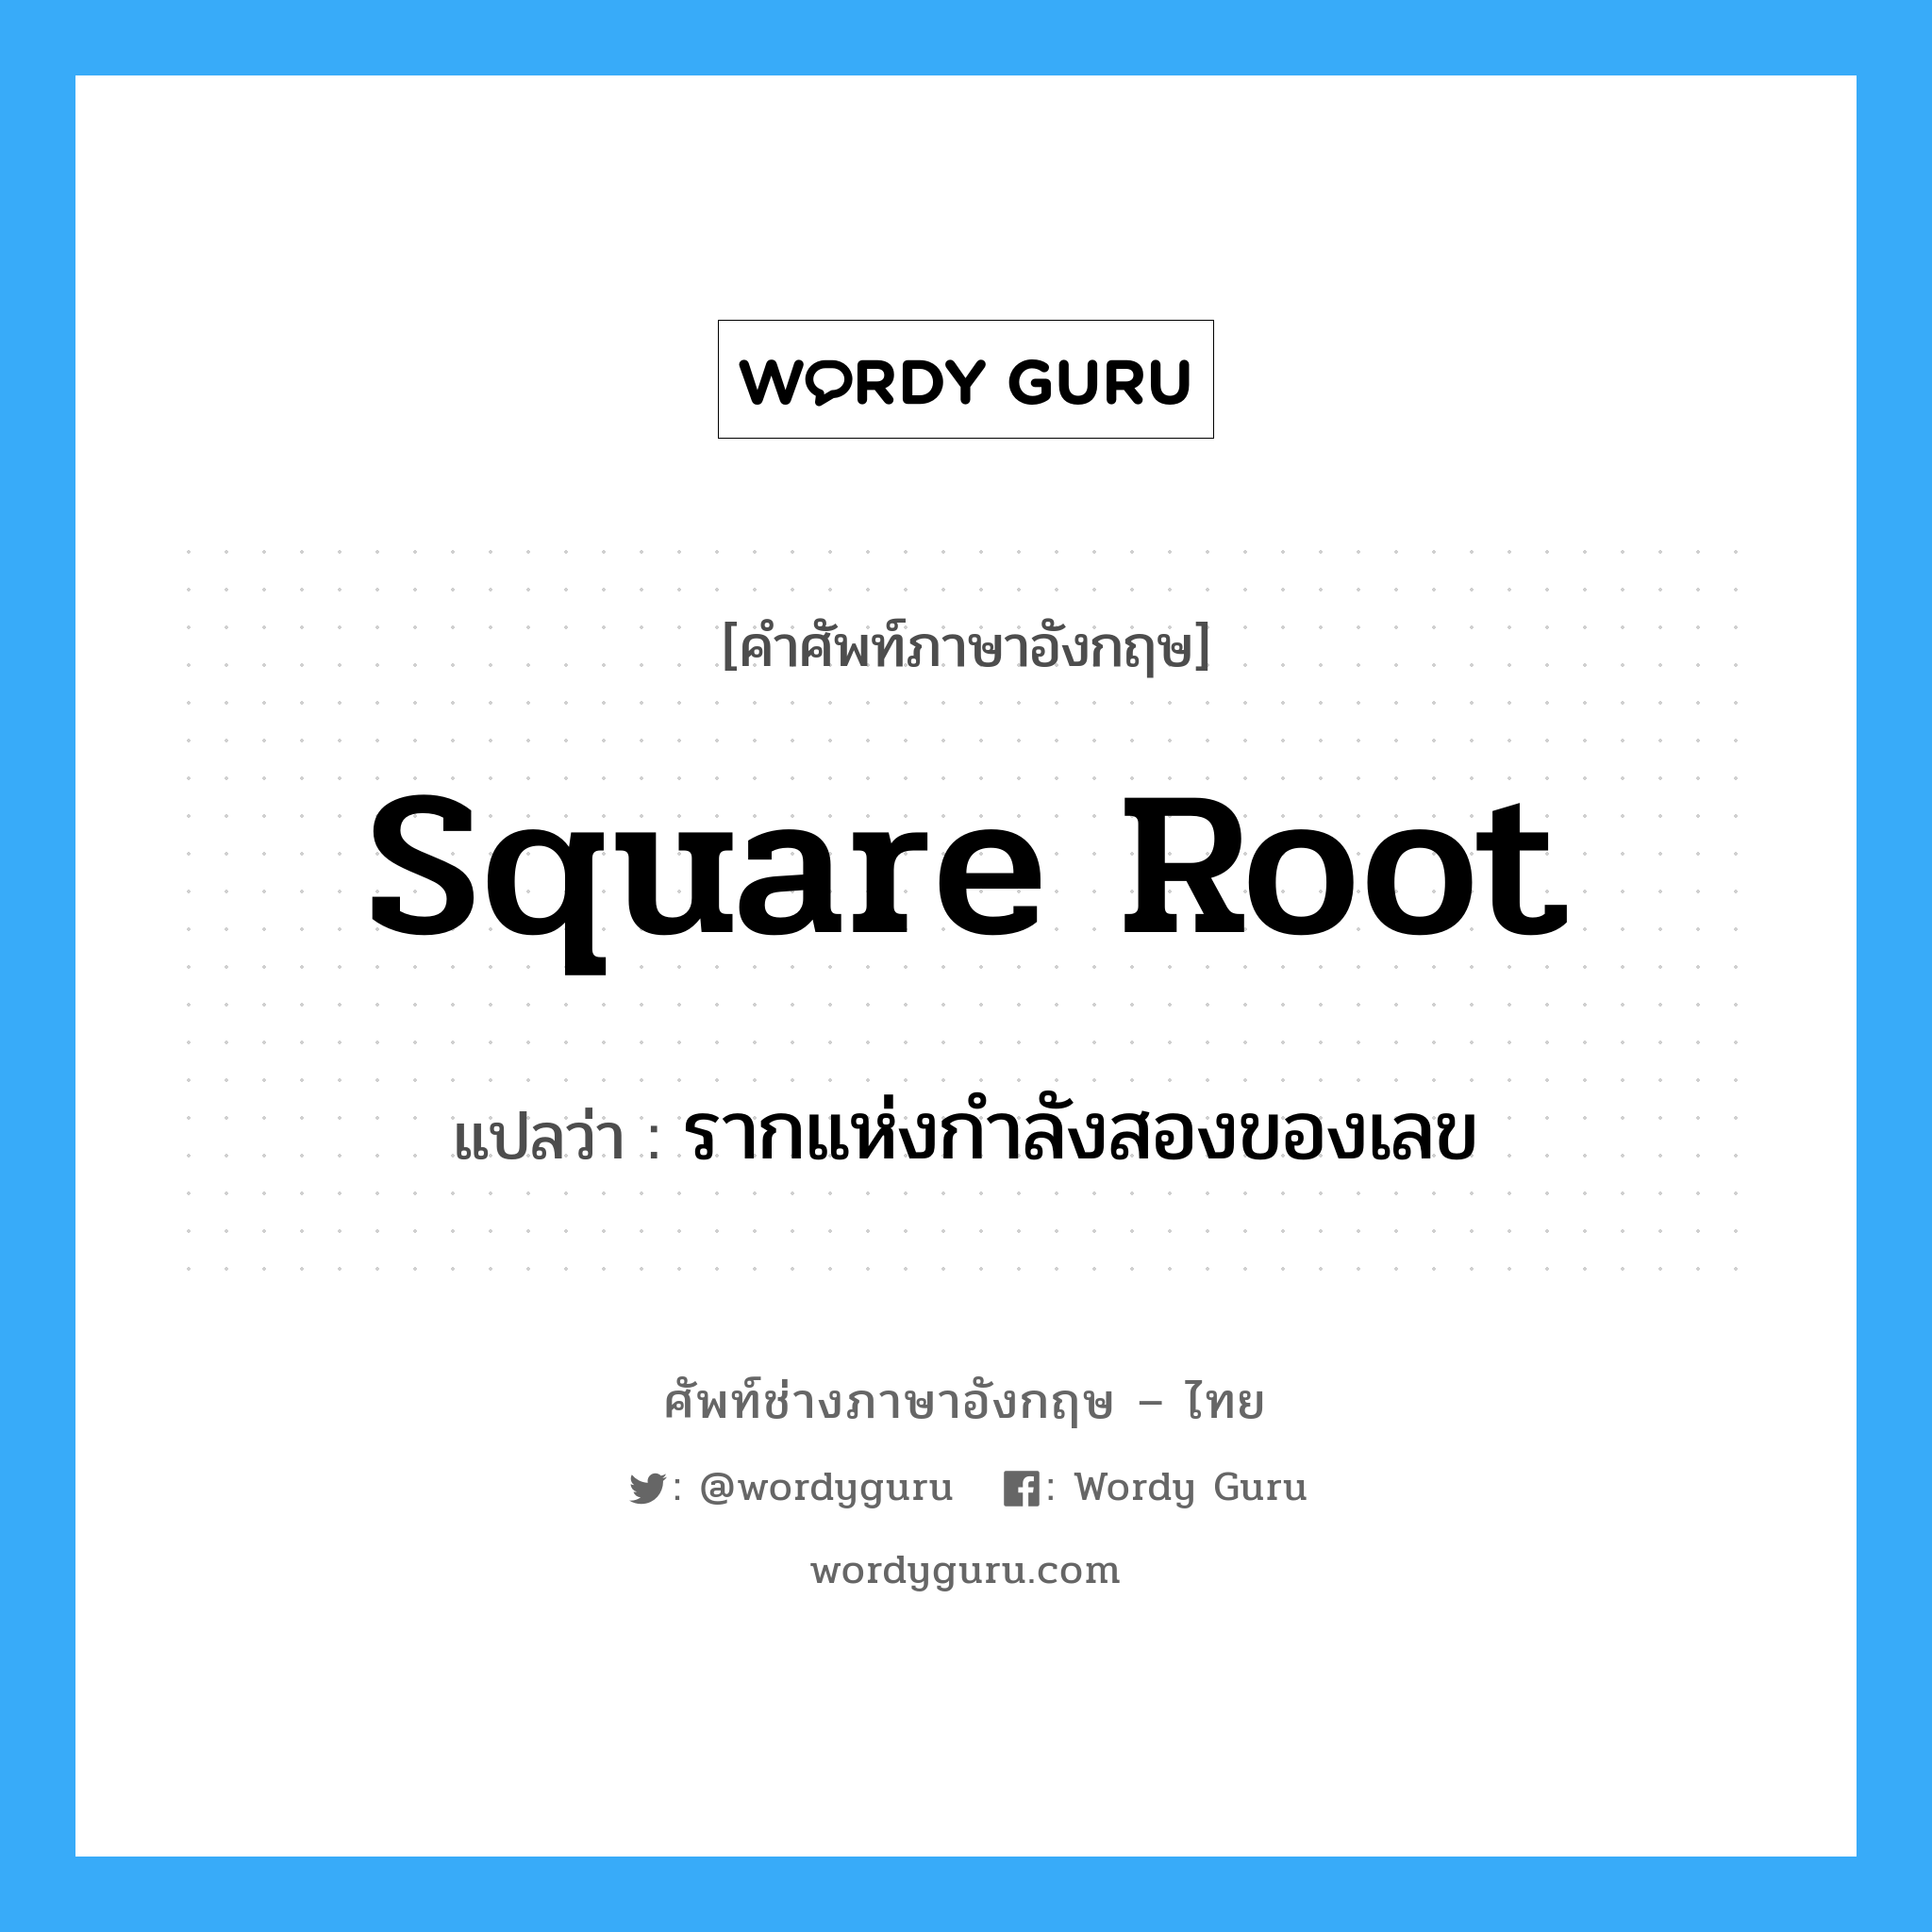 square root แปลว่า?, คำศัพท์ช่างภาษาอังกฤษ - ไทย square root คำศัพท์ภาษาอังกฤษ square root แปลว่า รากแห่งกำลังสองของเลข